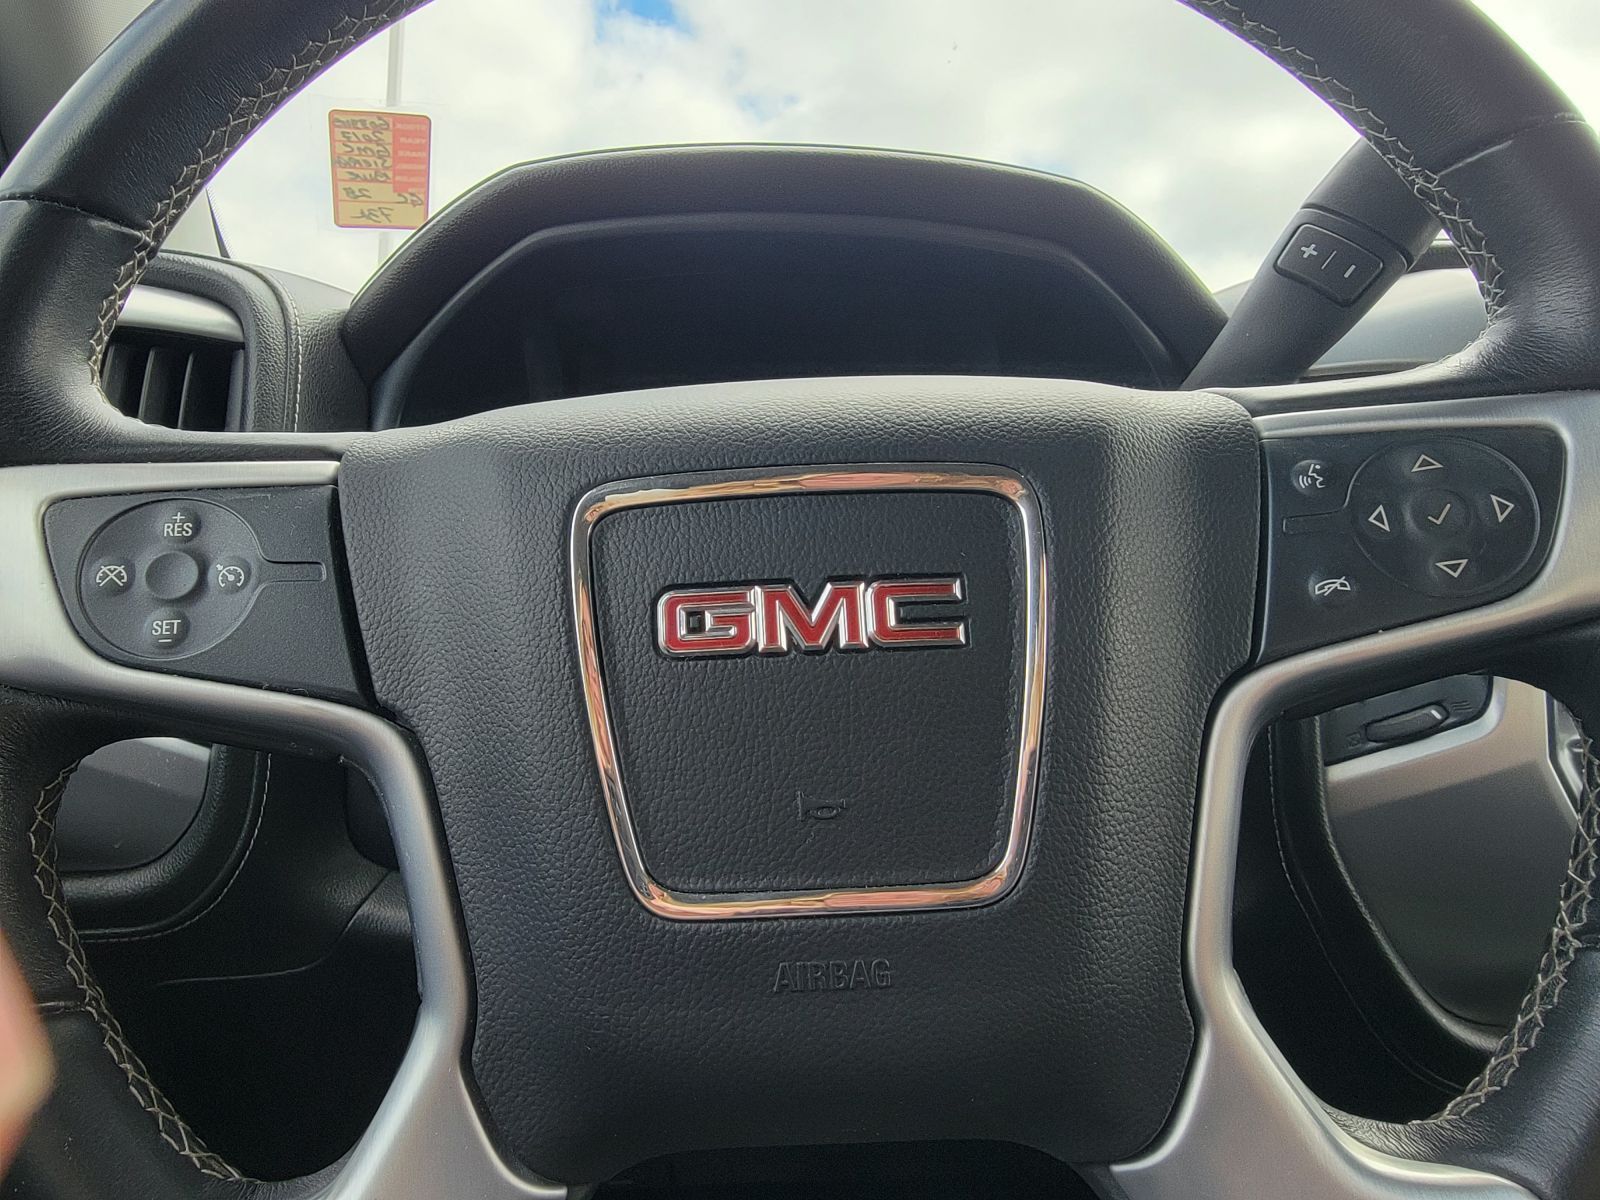 Used, 2017 GMC Sierra 1500 4WD Crew Cab 143.5